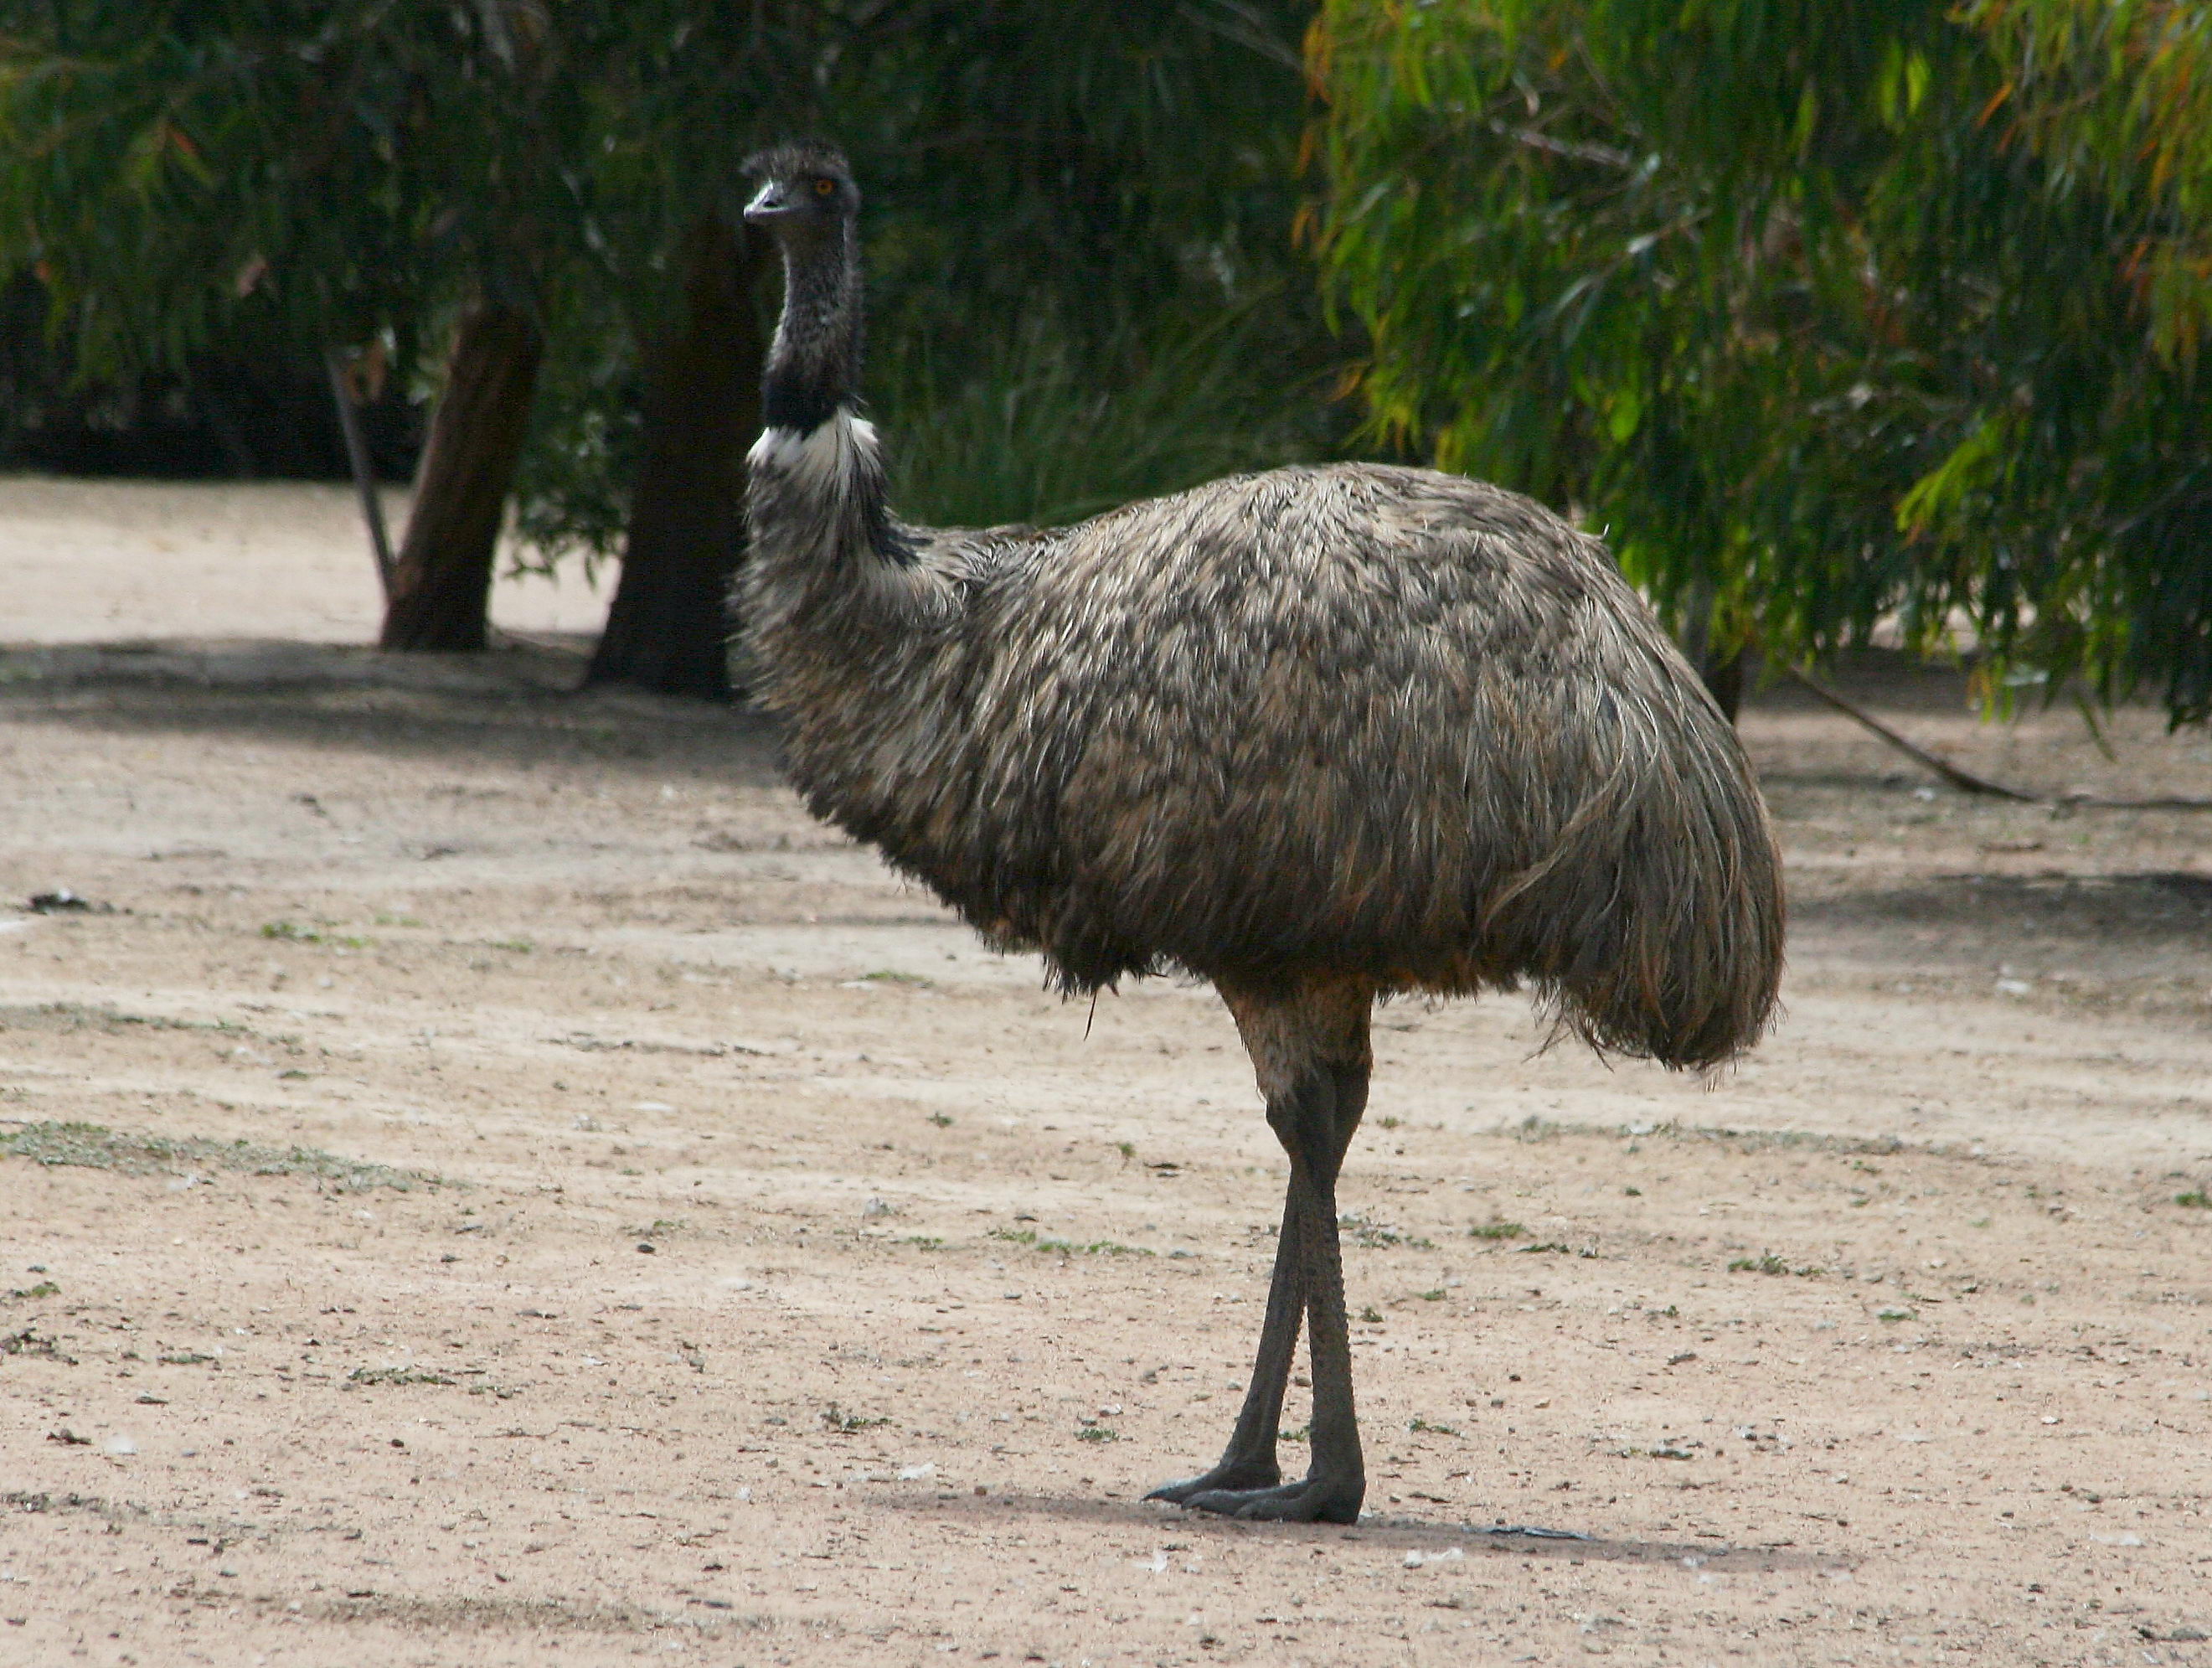 Emu habitat and range